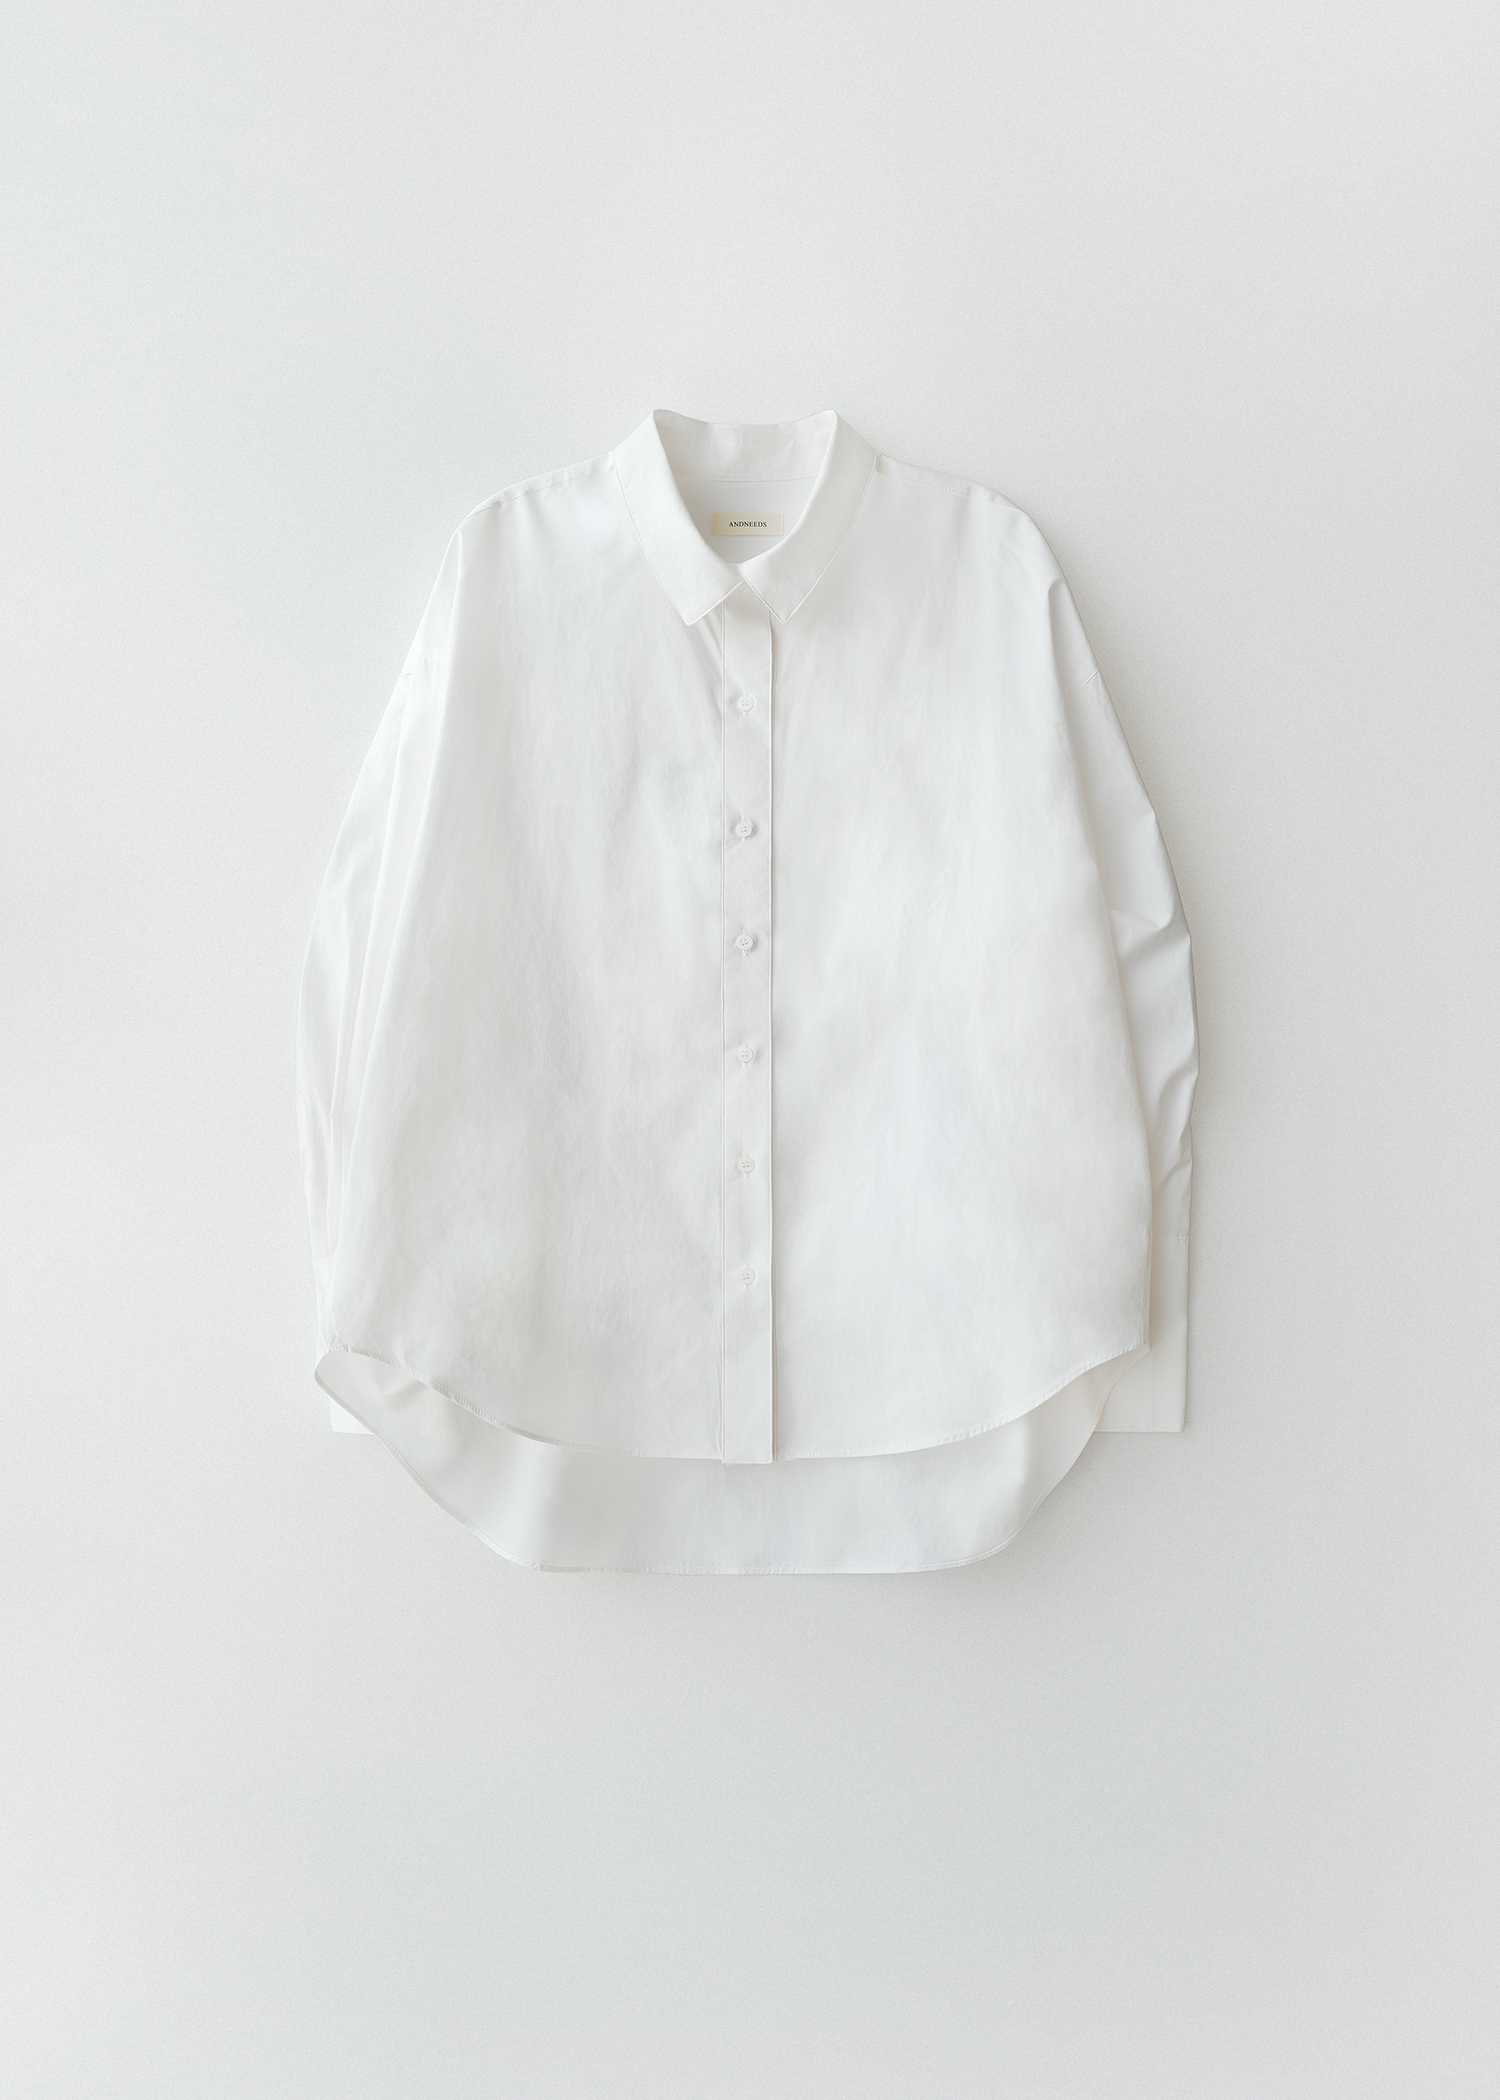 Loose shirt (white)